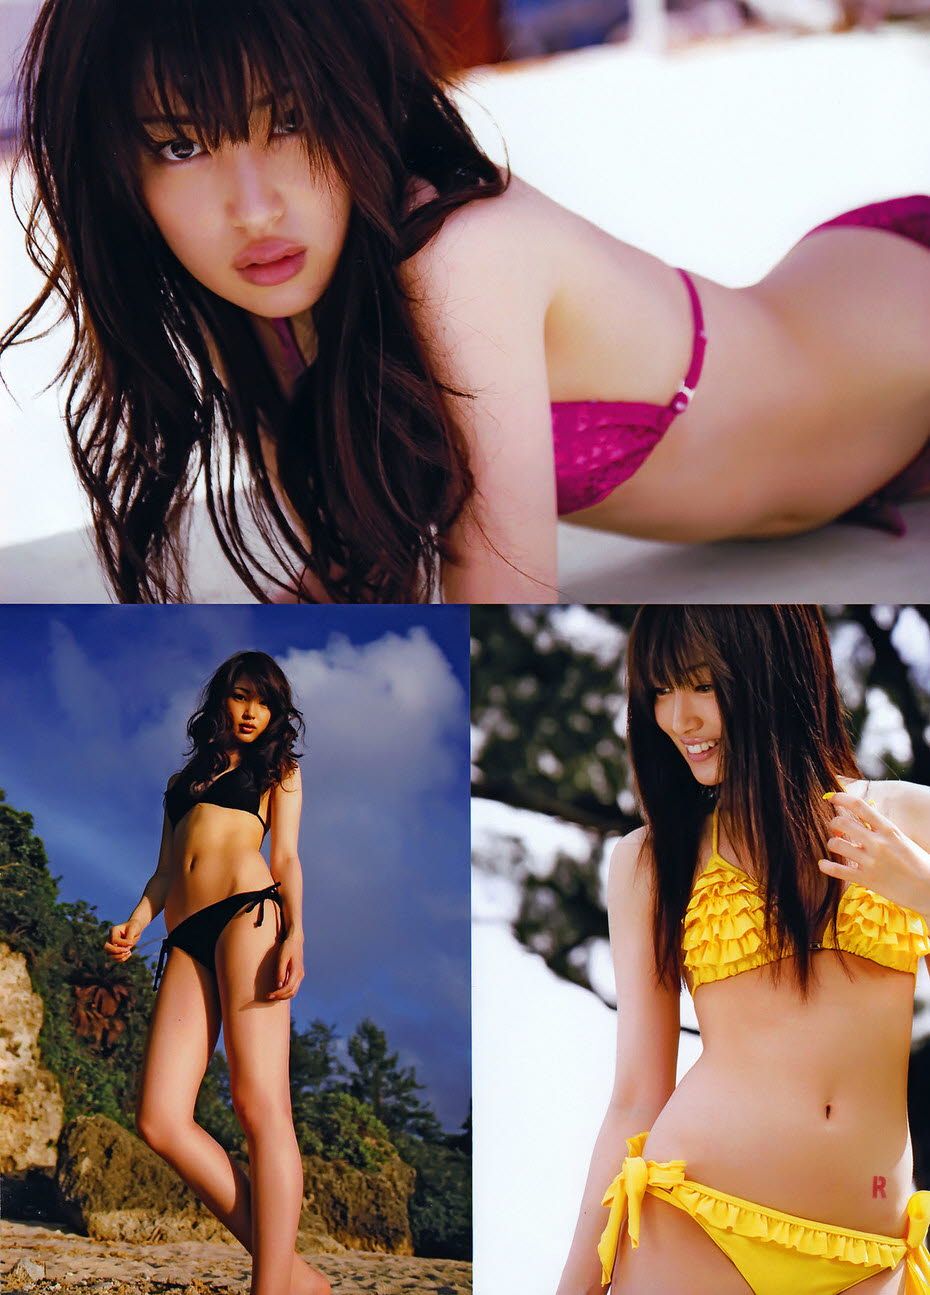 Rin Takanashi Sexy and Hottest Photos , Latest Pics